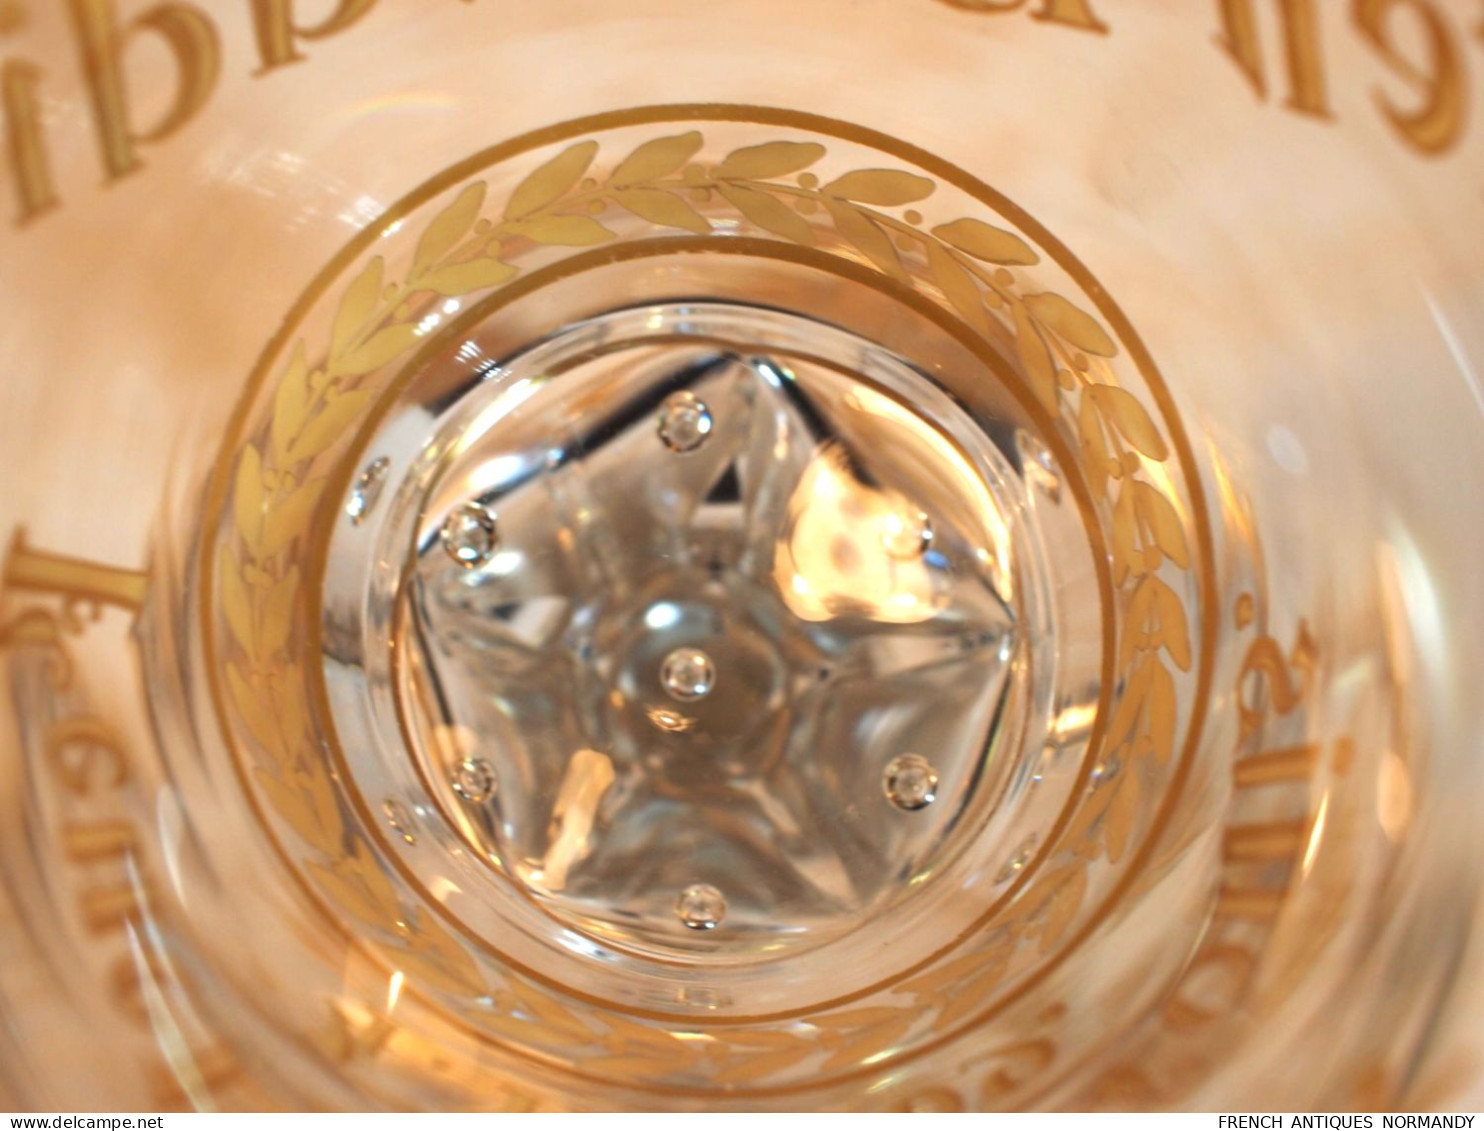 Très grand Verre haut de 33 cm !  En Cristal de Saint Louis  - verre d'honneur SAPEURS POMPIERS 1909